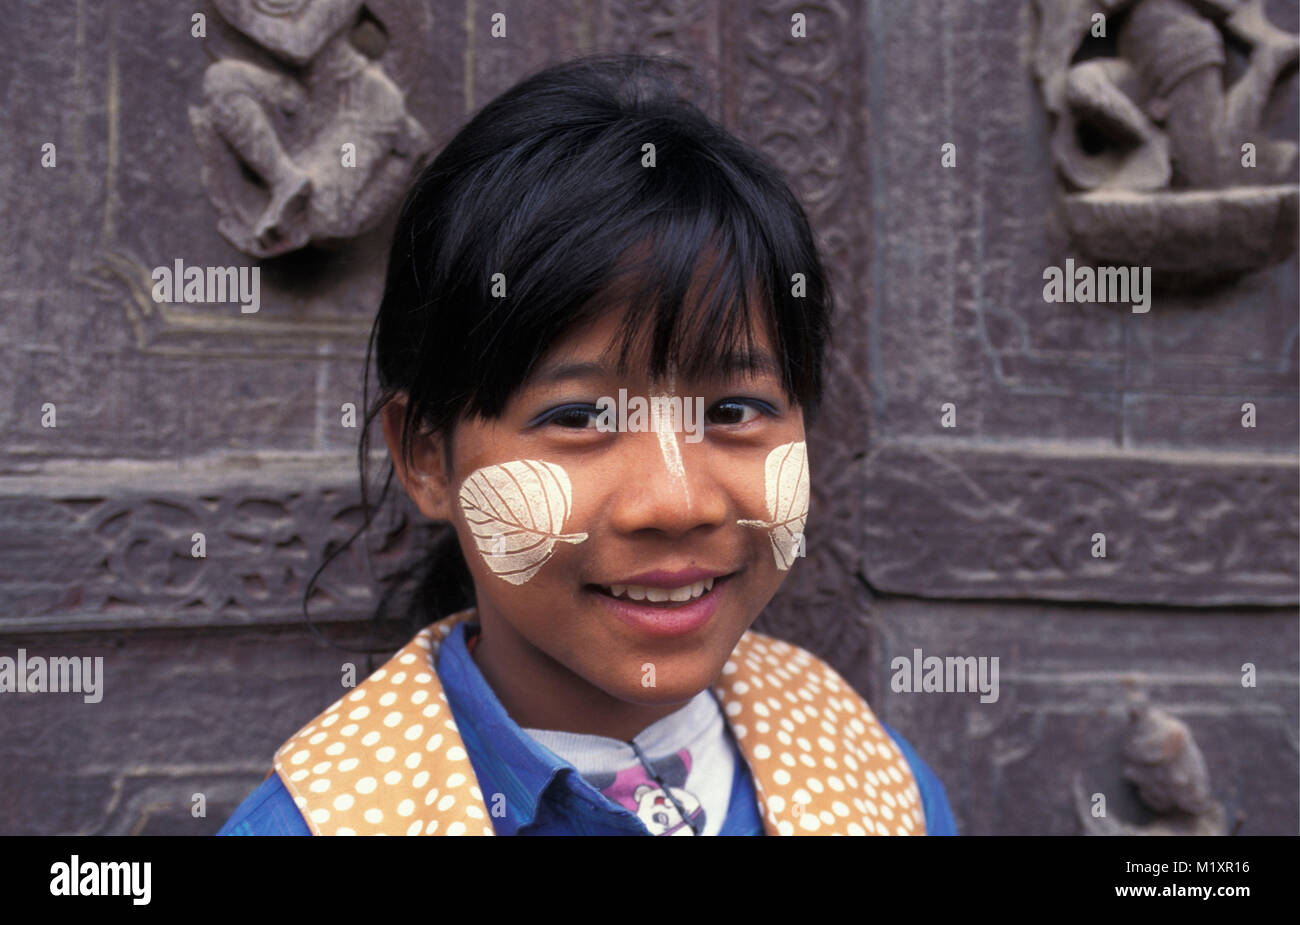 Myanmar (Birmania). Mandalay. Chica con thanaka crema en forma de hoja (protección solar y decoración). Retrato. Foto de stock